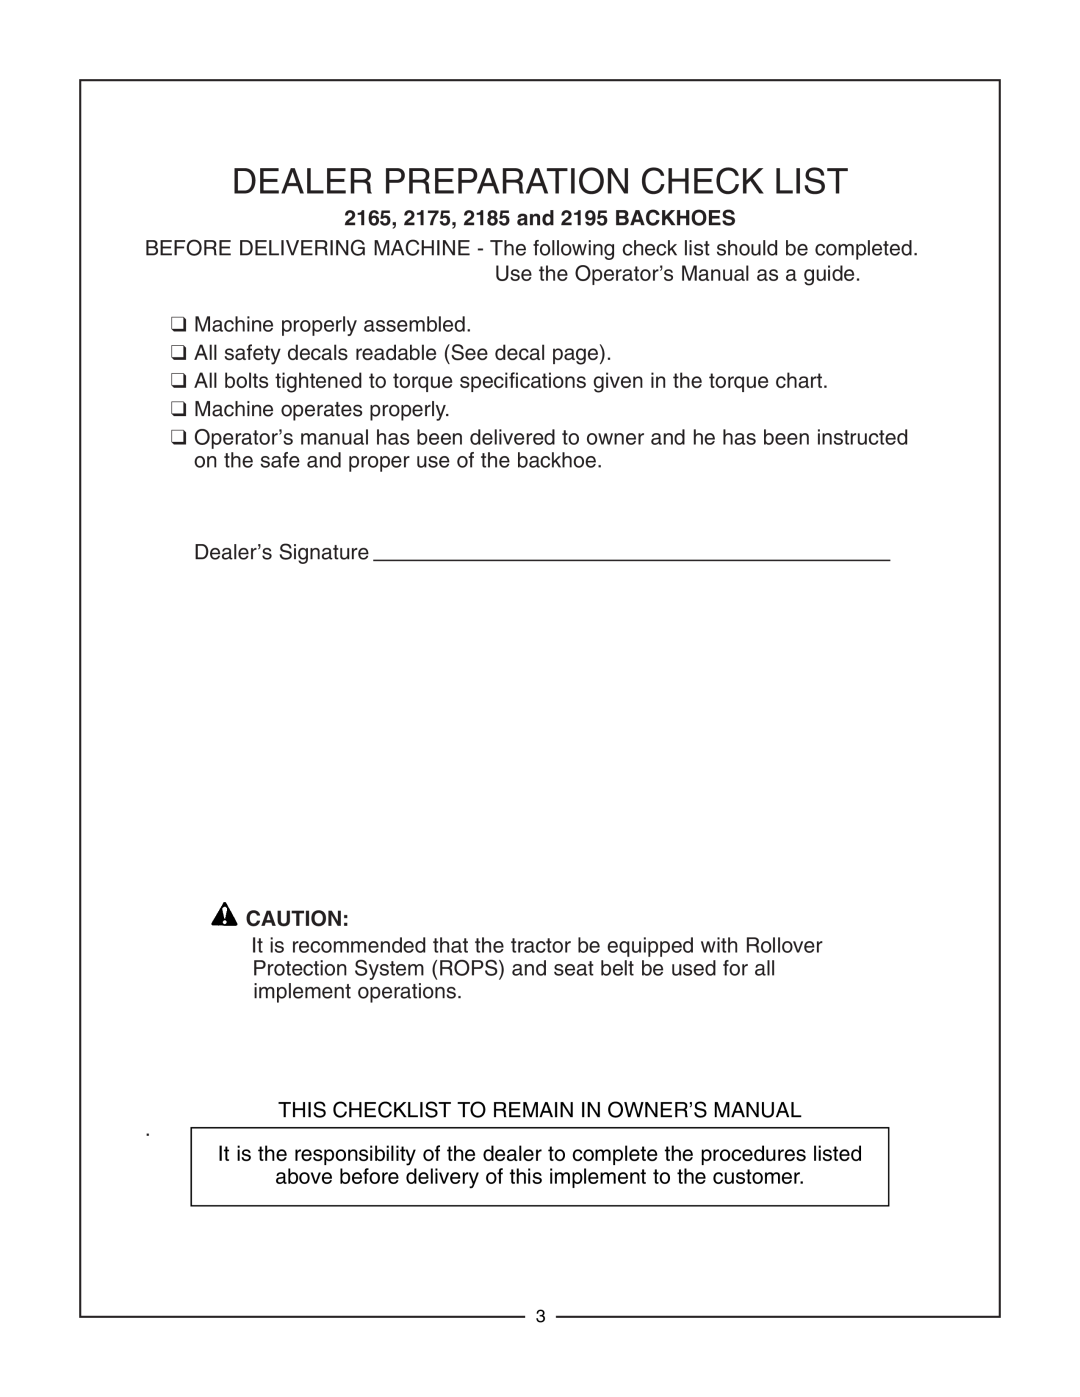 Bush Hog manual 2165, 2175, 2185 and 2195 BACKHOES, Dealer Preparation Check List 